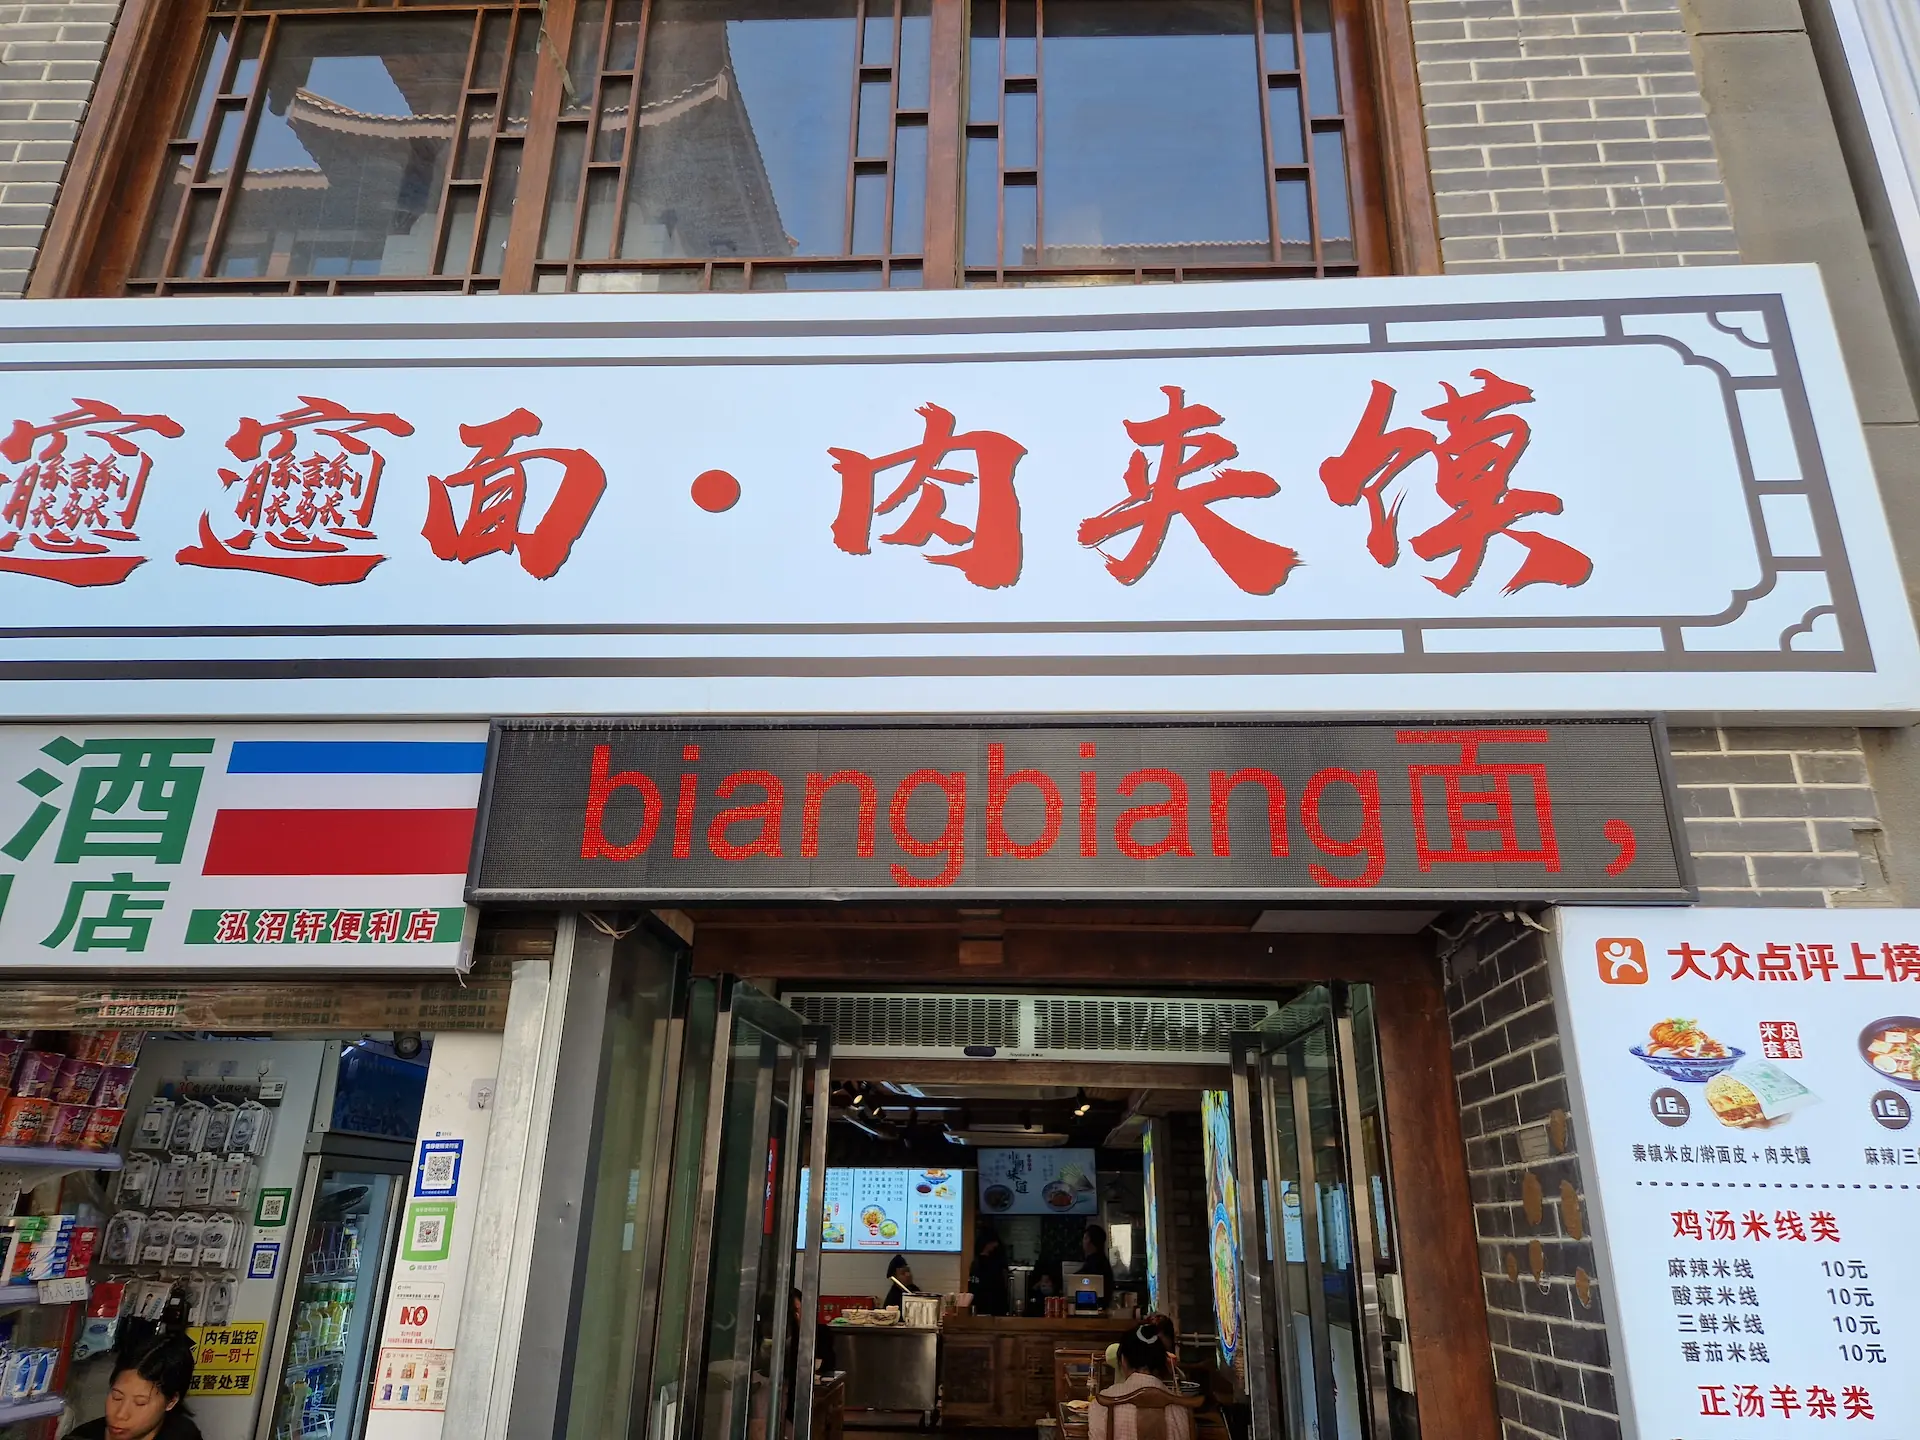 Un signe dans la rue annonce des nouilles biángbiáng, avec les caractères 'biáng' romanisés et le caractère 'miàn' (nouilles) en chinois